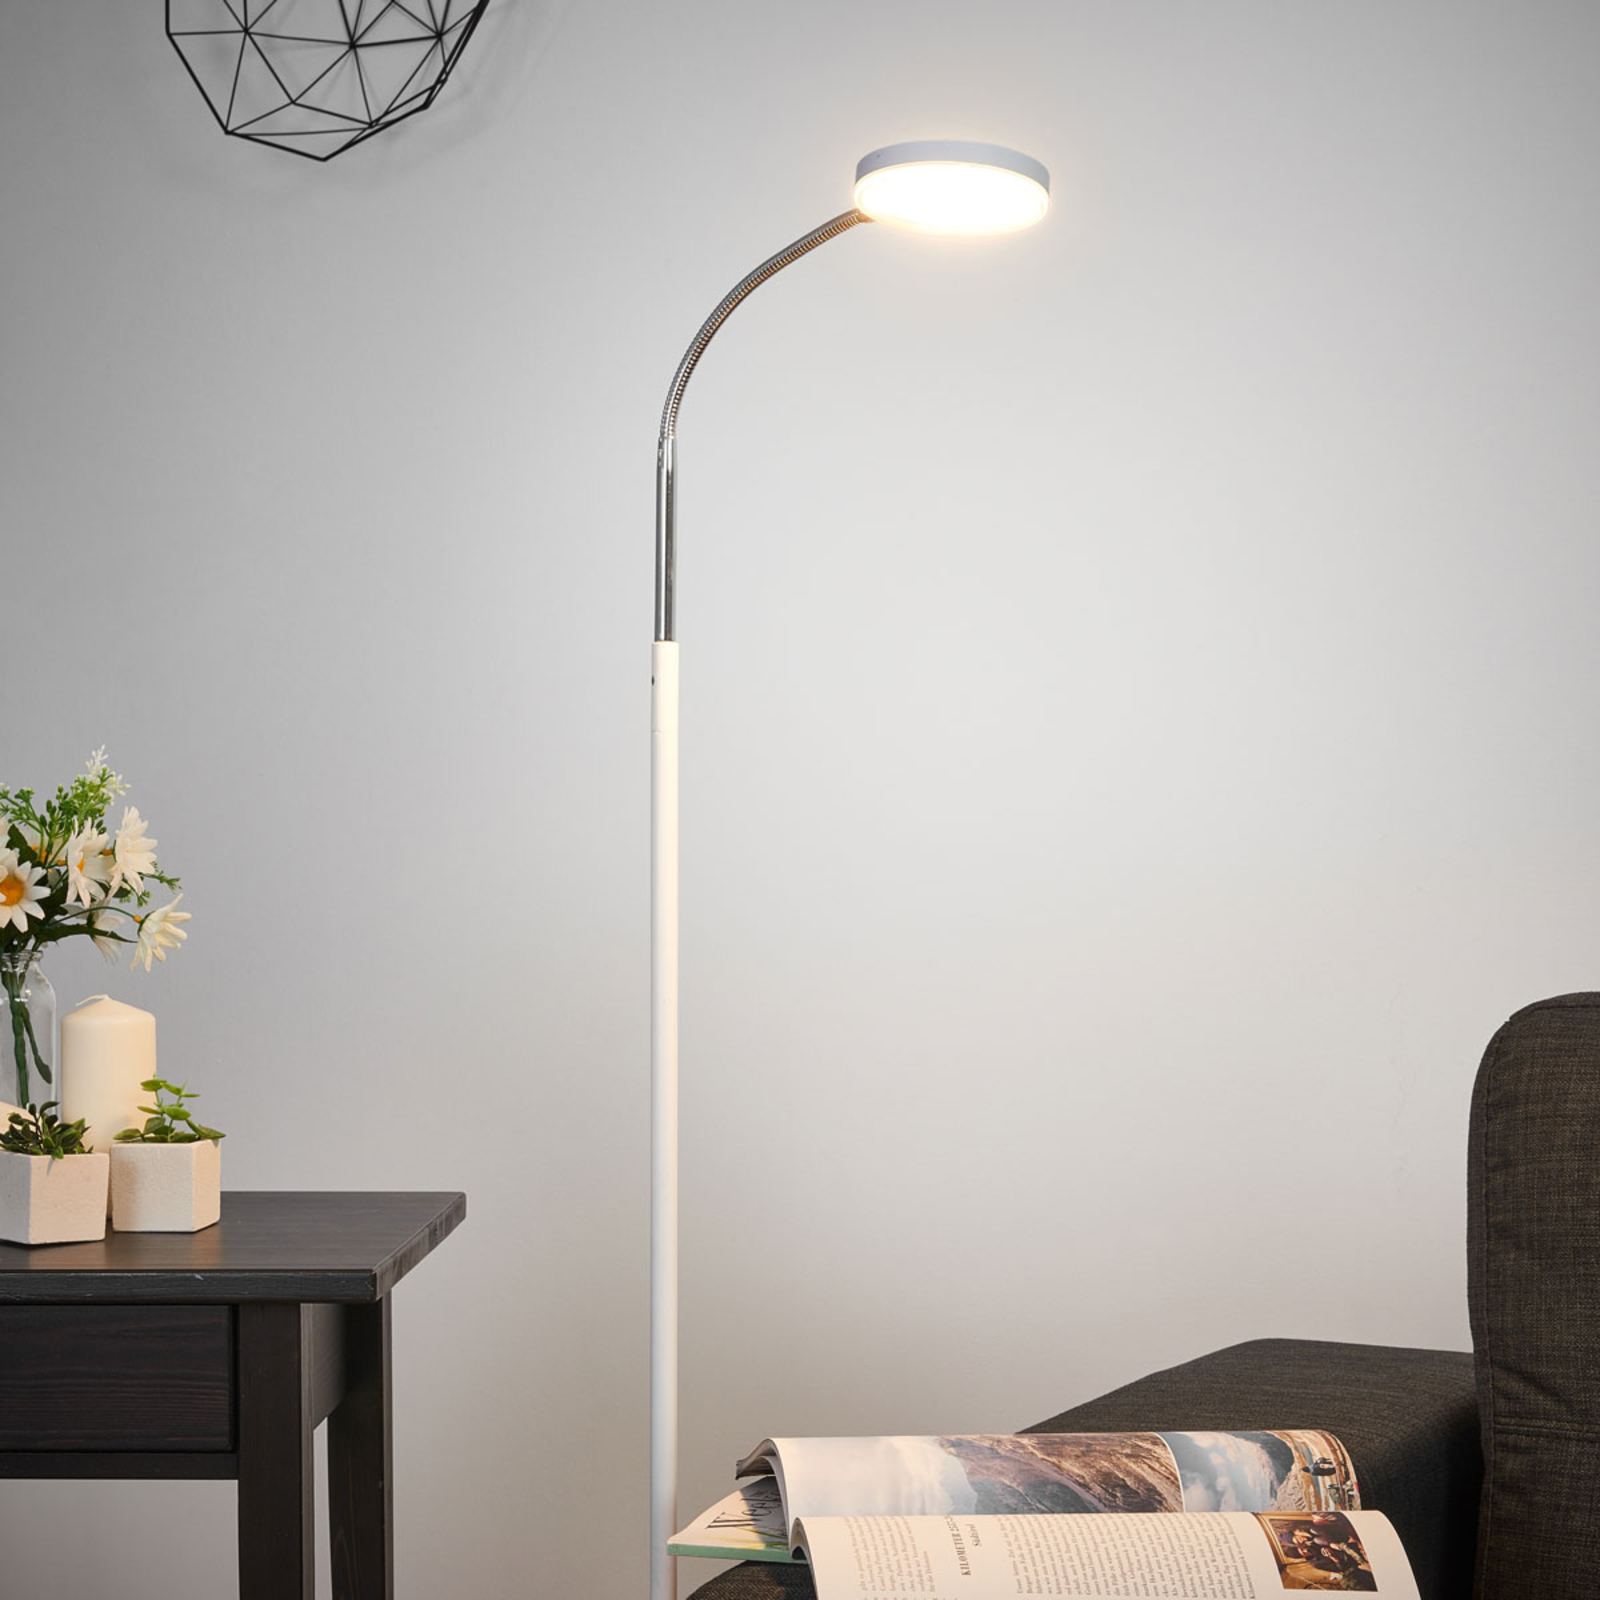 Lampa stojąca LED Lindby Milow, biała, 140 cm wysokości, włącznik nożny